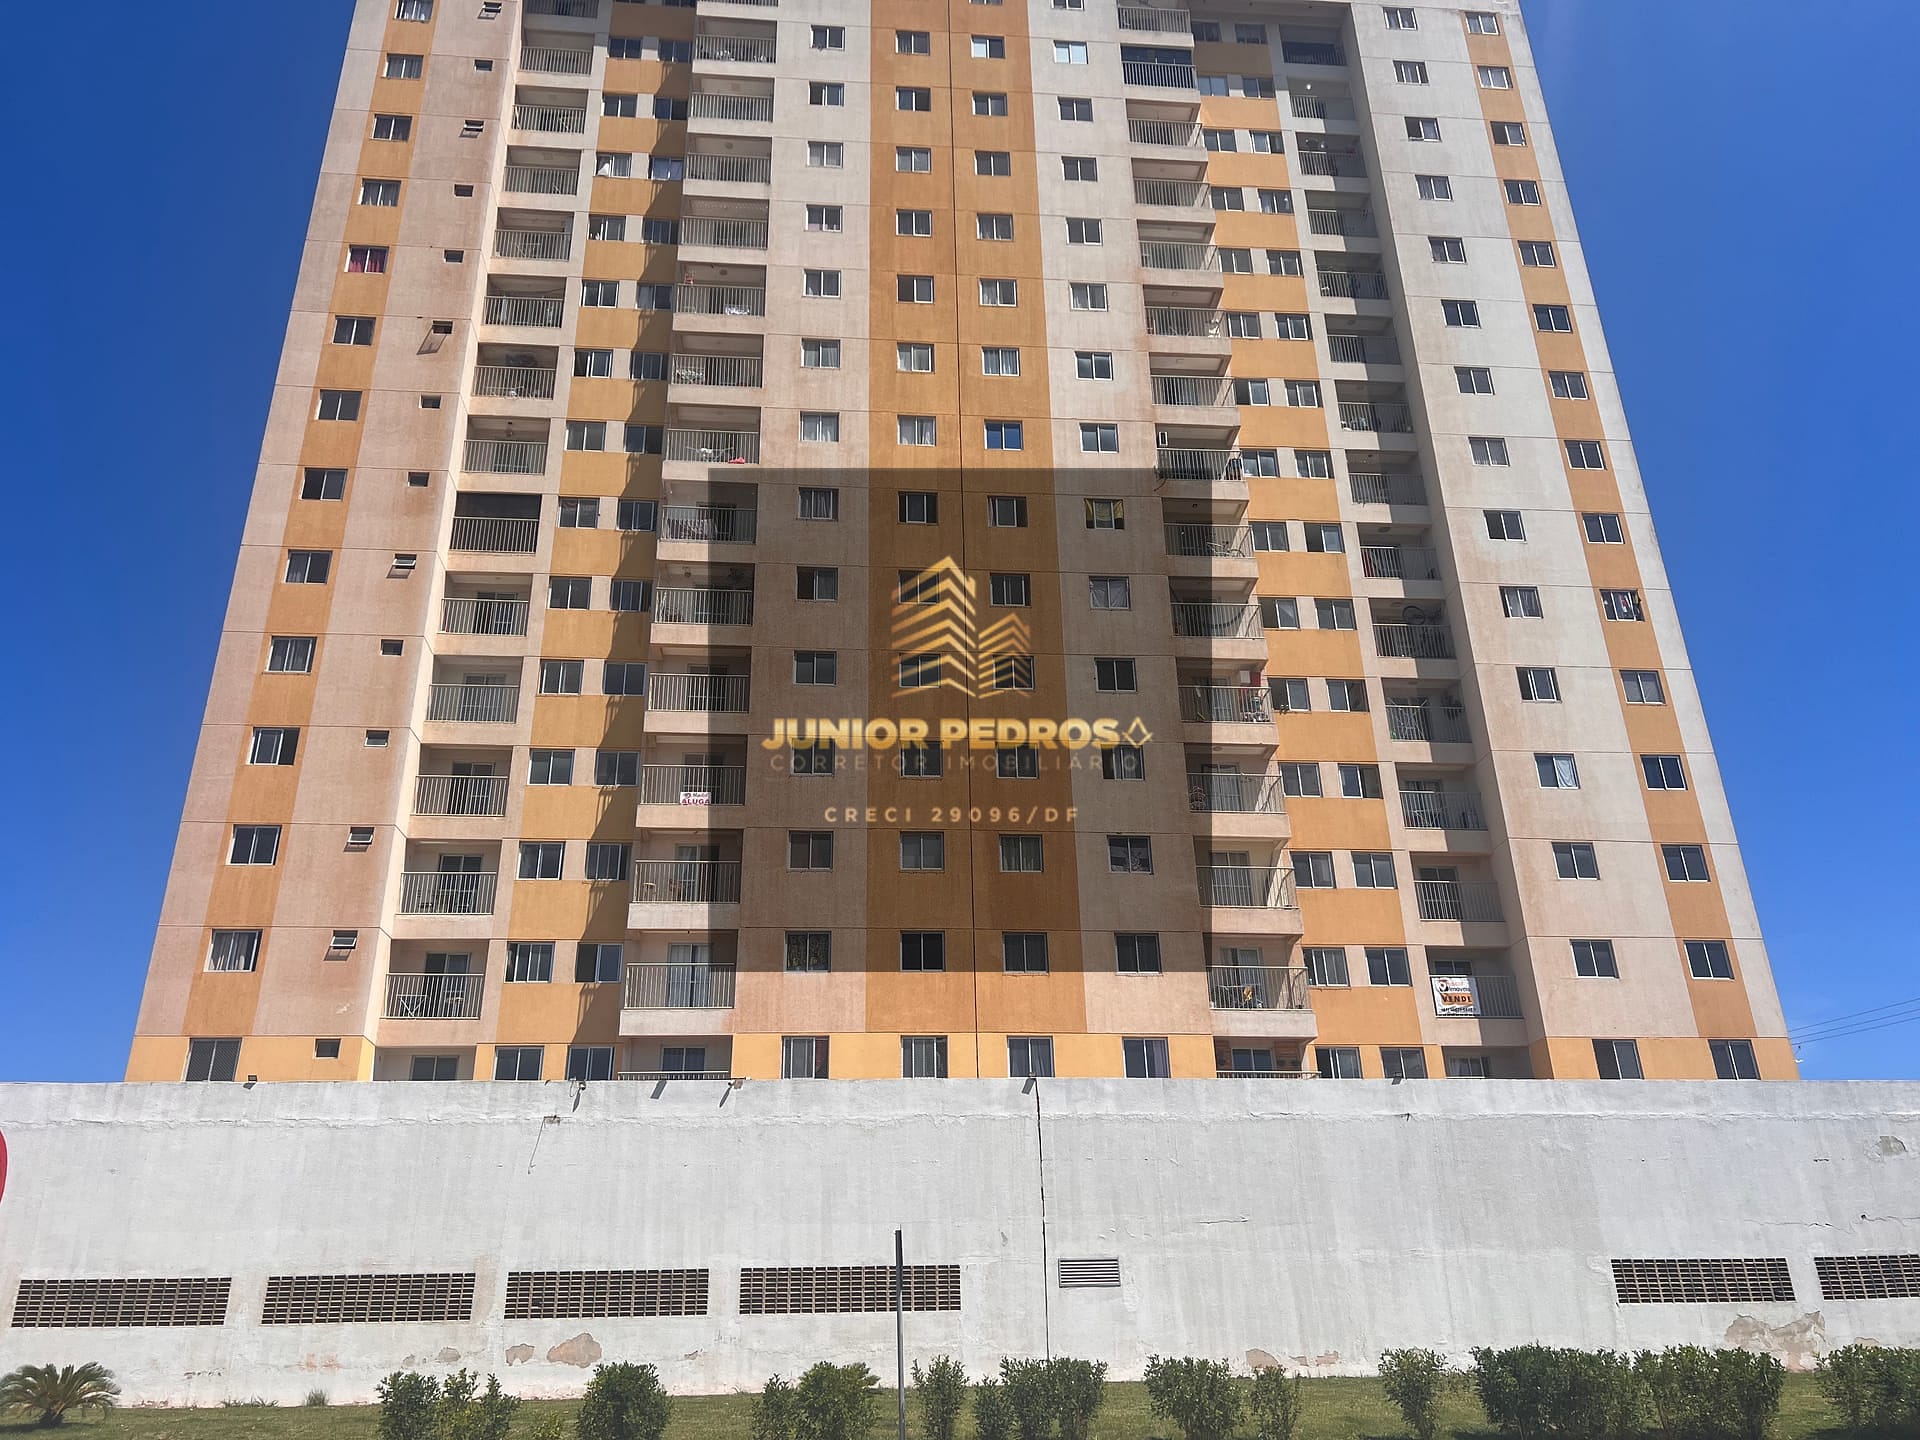 Apartamento em Samambaia Sul (Samambaia), Brasília/DF de 75m² 3 quartos à venda por R$ 294.000,00